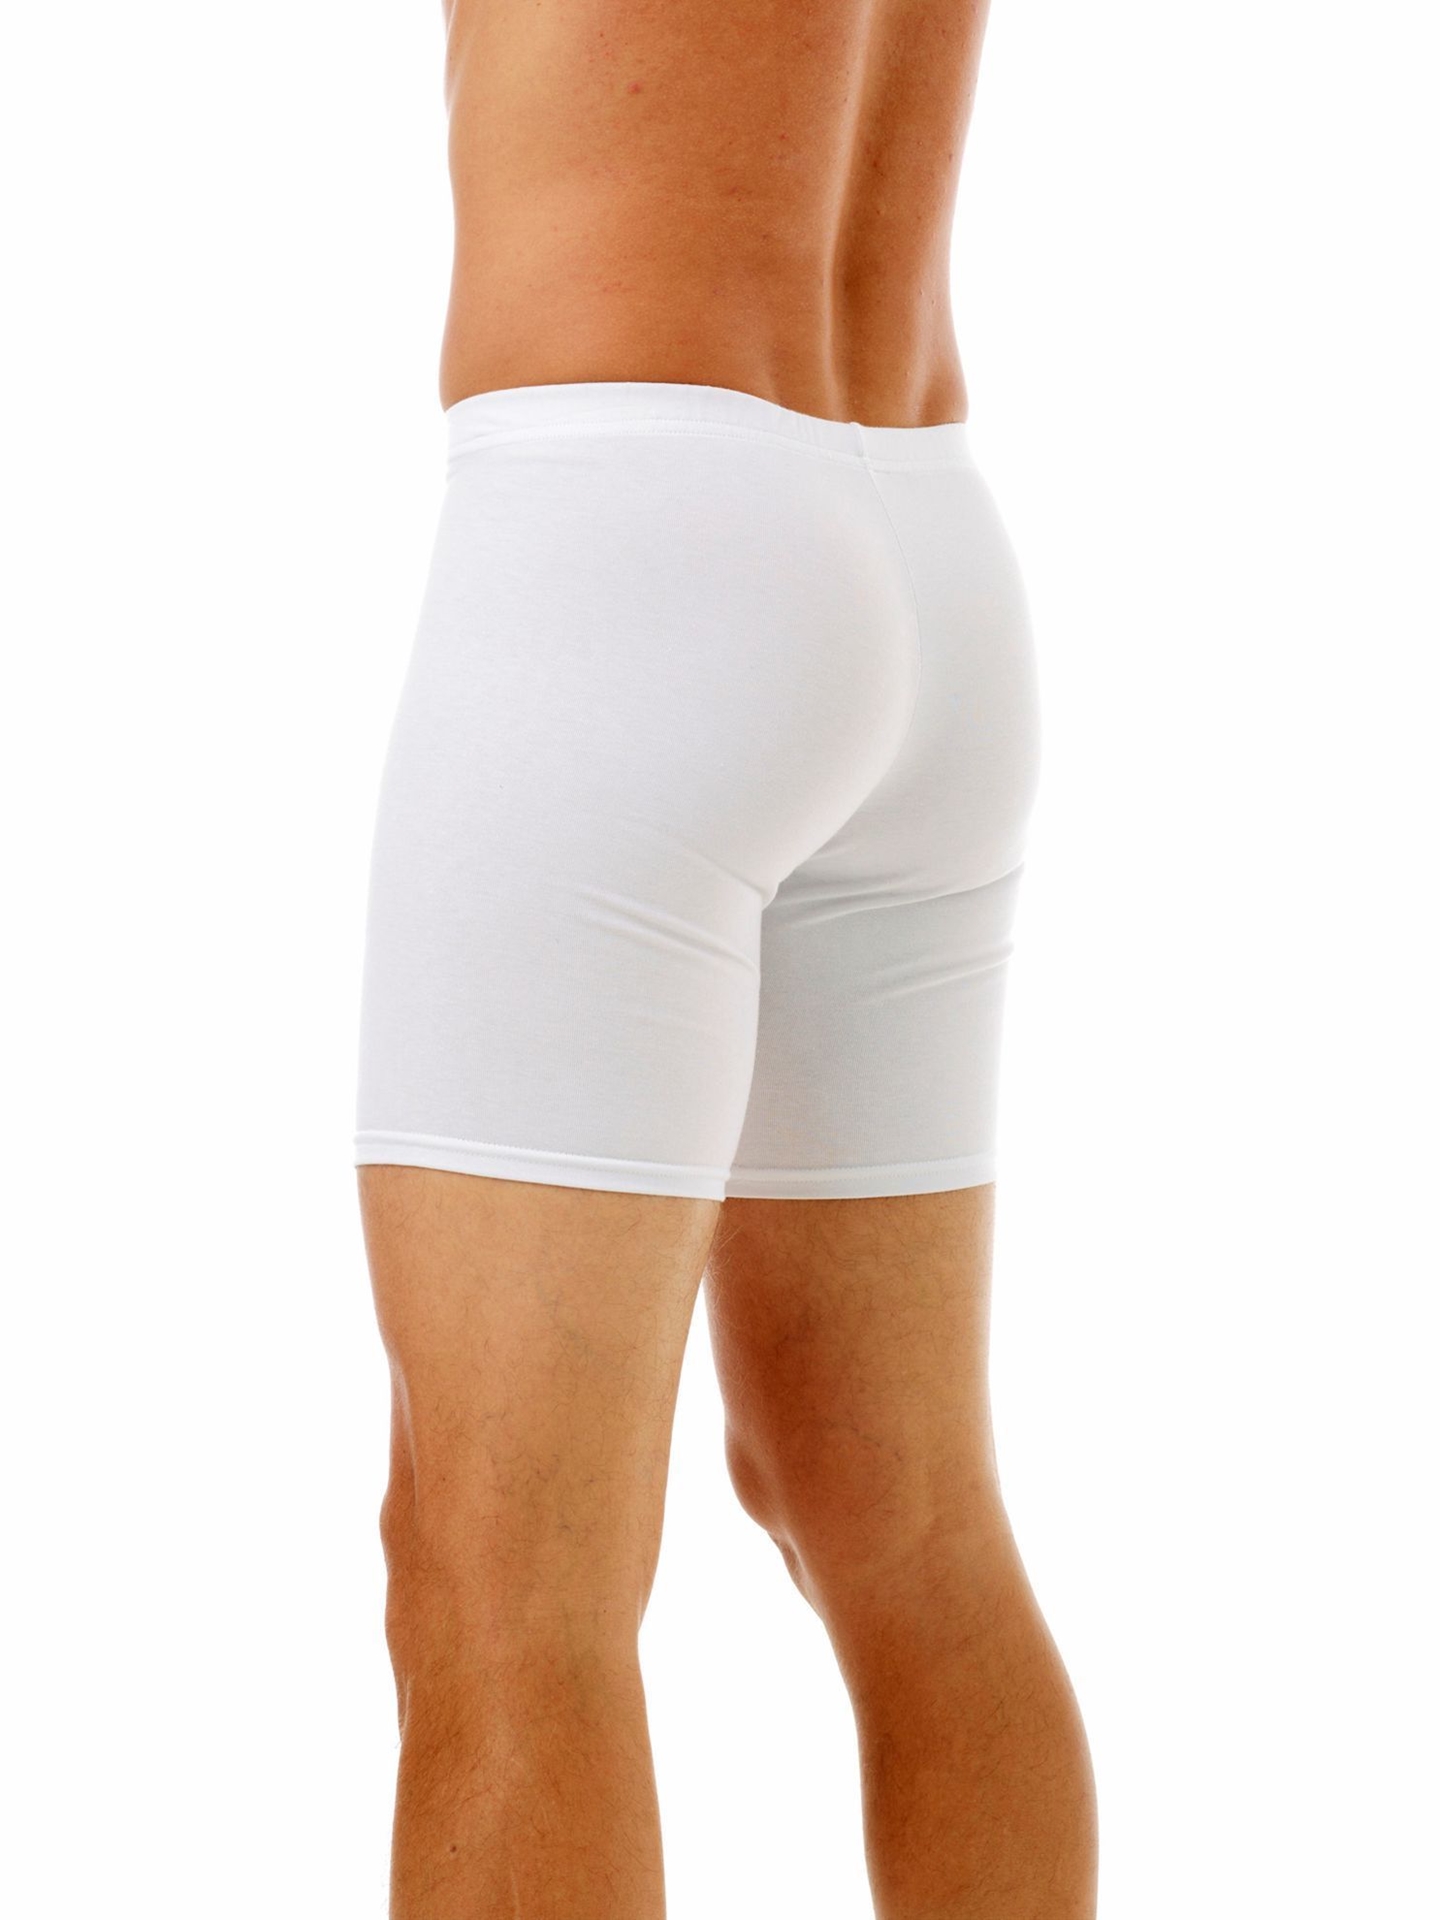 Underworks Men's Cotton Spandex Long Boxer Underwear - White - XS